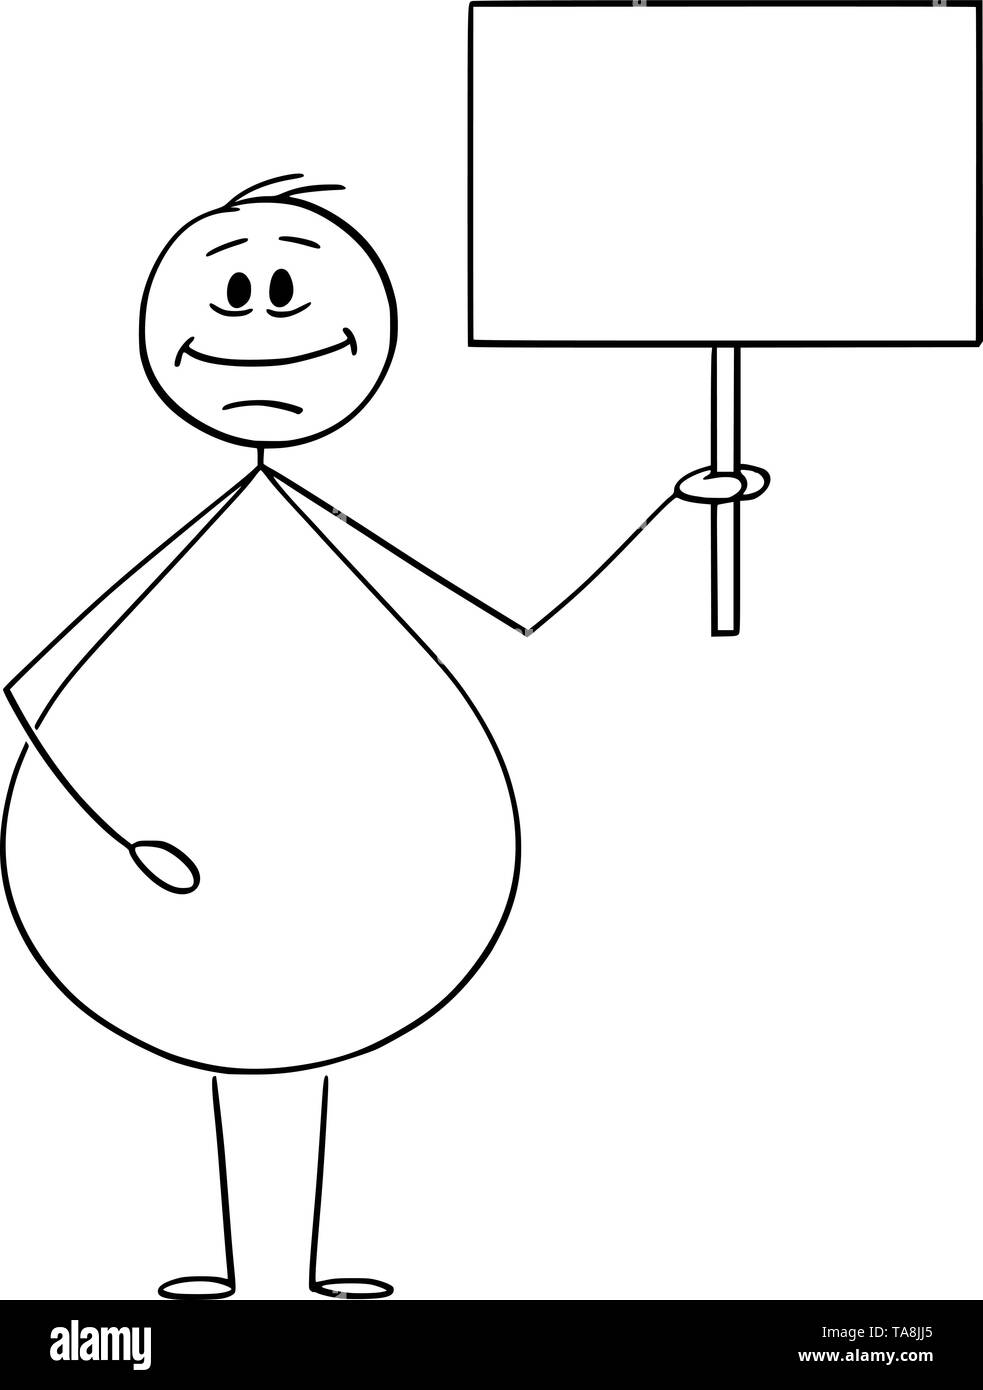 Vektor cartoon Strichmännchen Zeichnen konzeptionelle Darstellung der lächelnden übergewichtig oder fettleibig Mann mit leeren Zeichen bereit für ihren Text. Stock Vektor